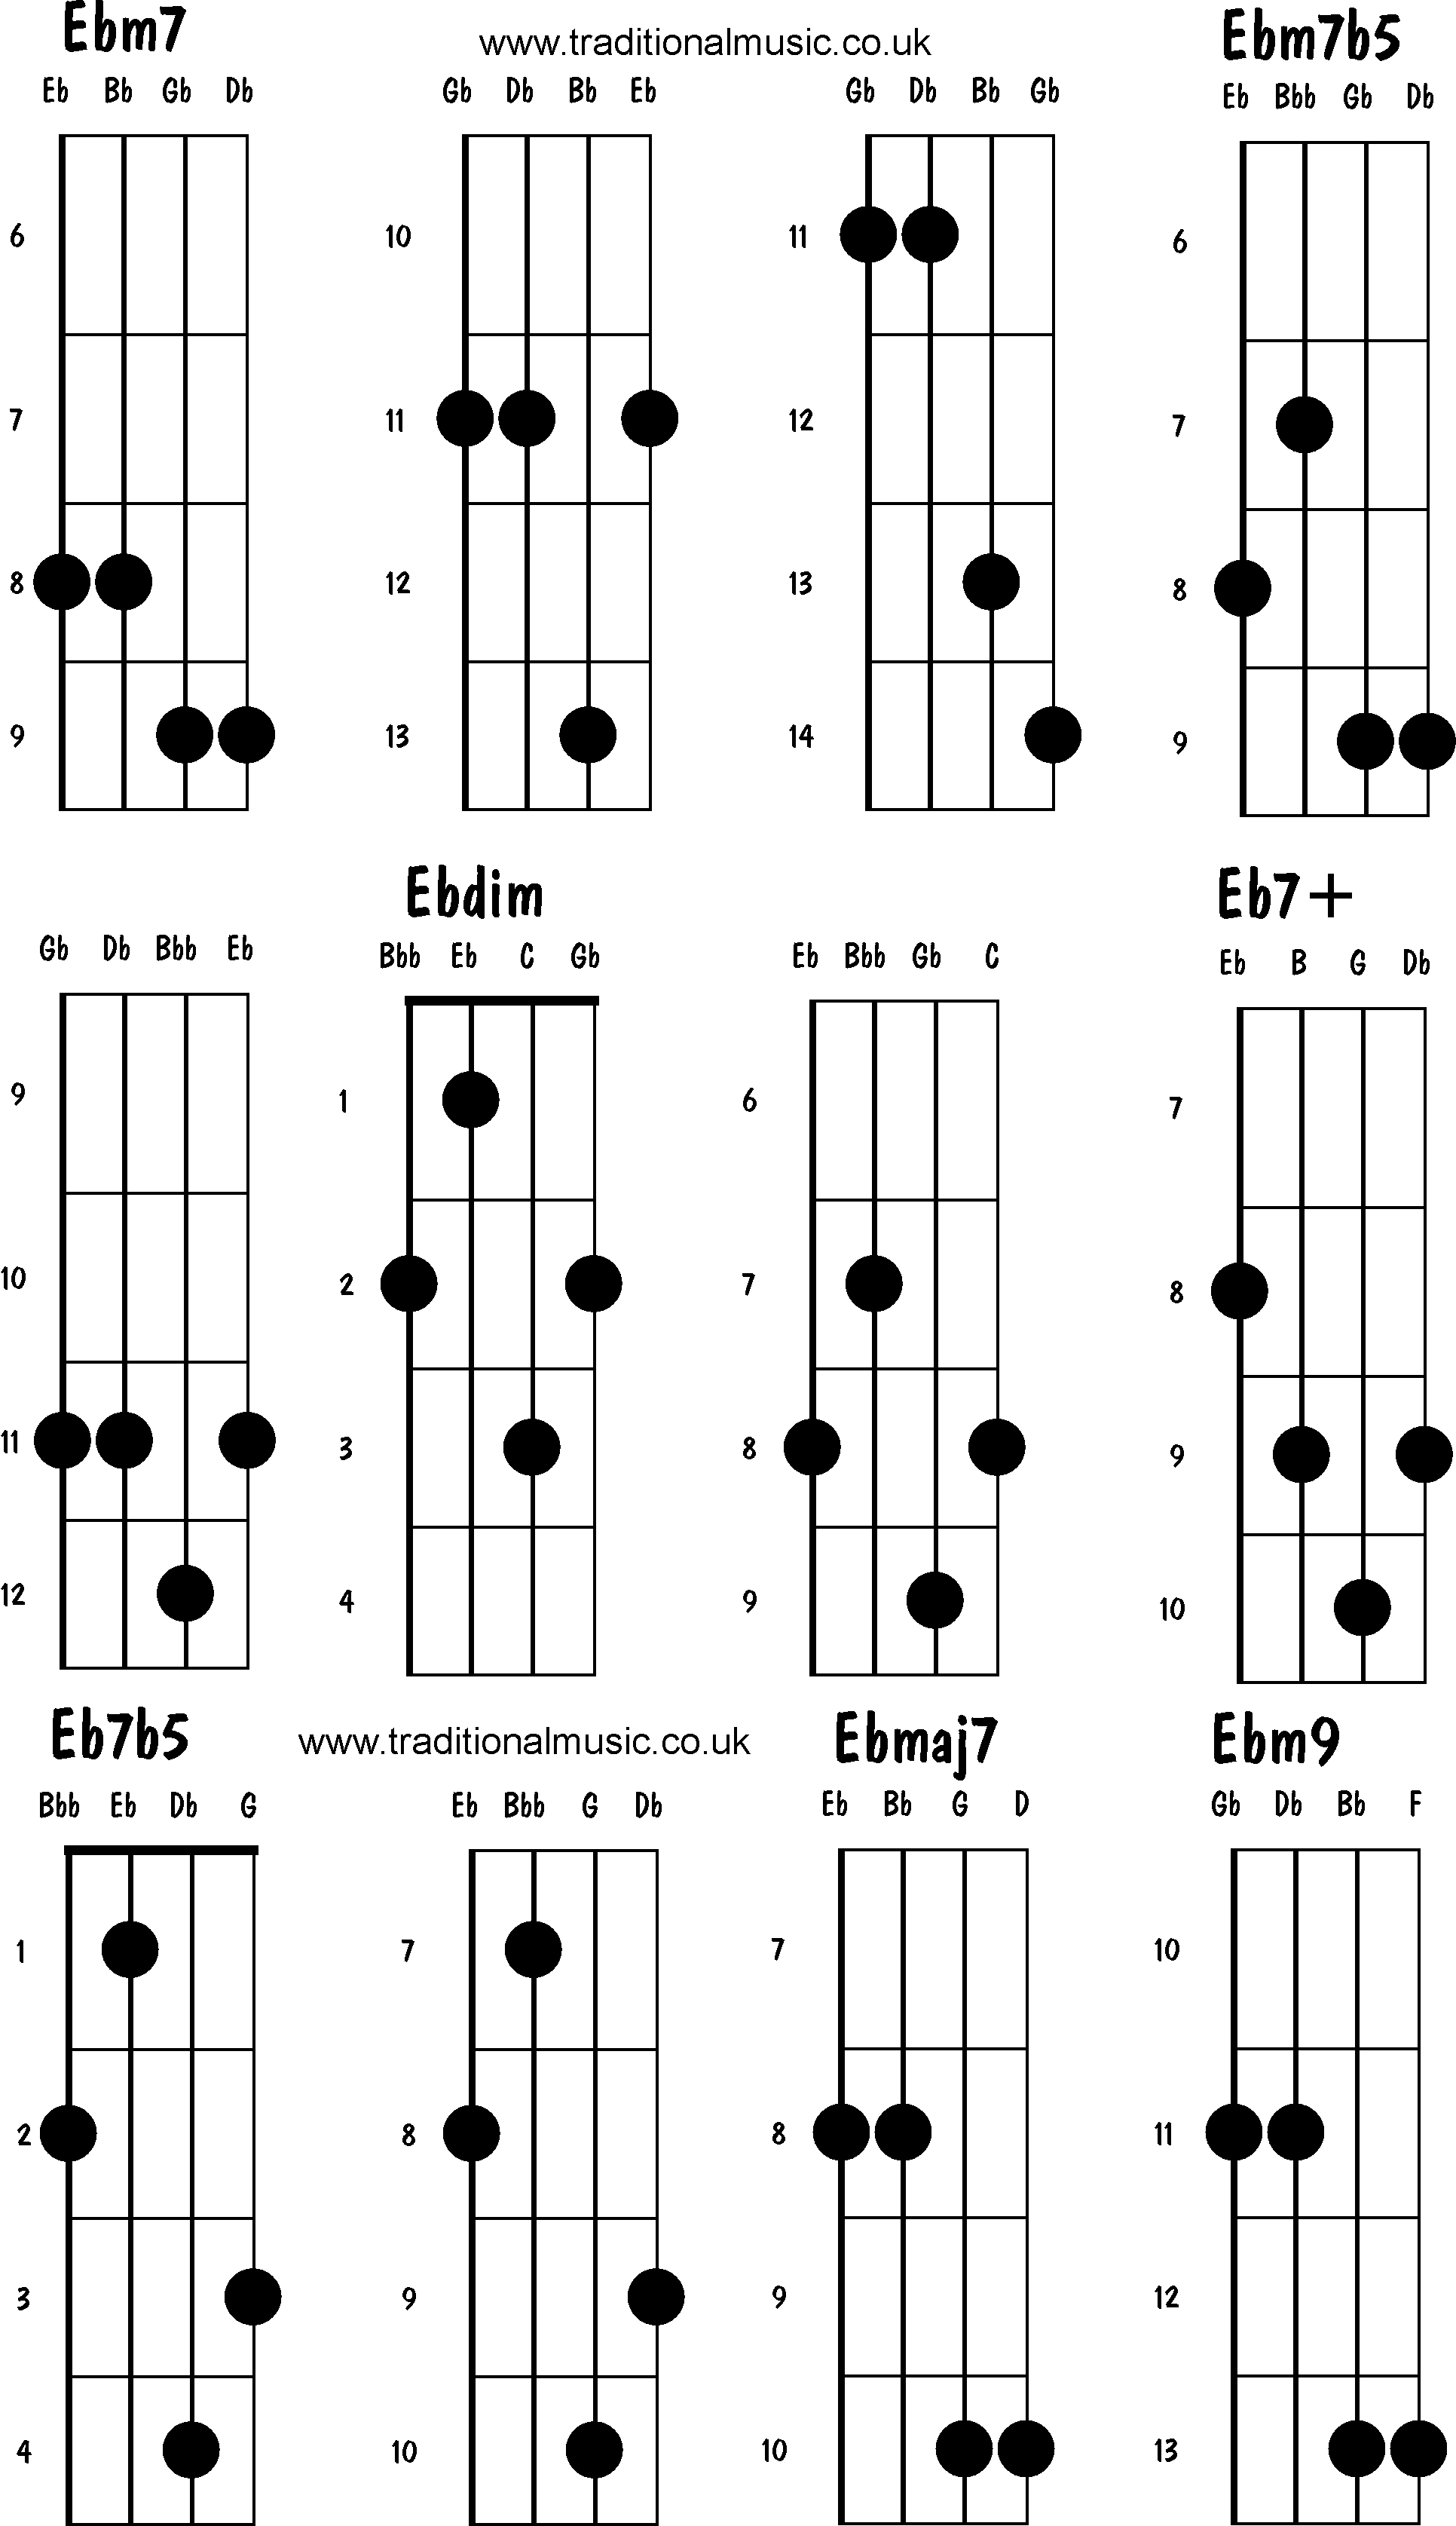 Advanced mandolin chords: Ebm7, Ebm7b5, Ebdim, Eb7+,Eb7b5, Ebmaj7, Ebm9